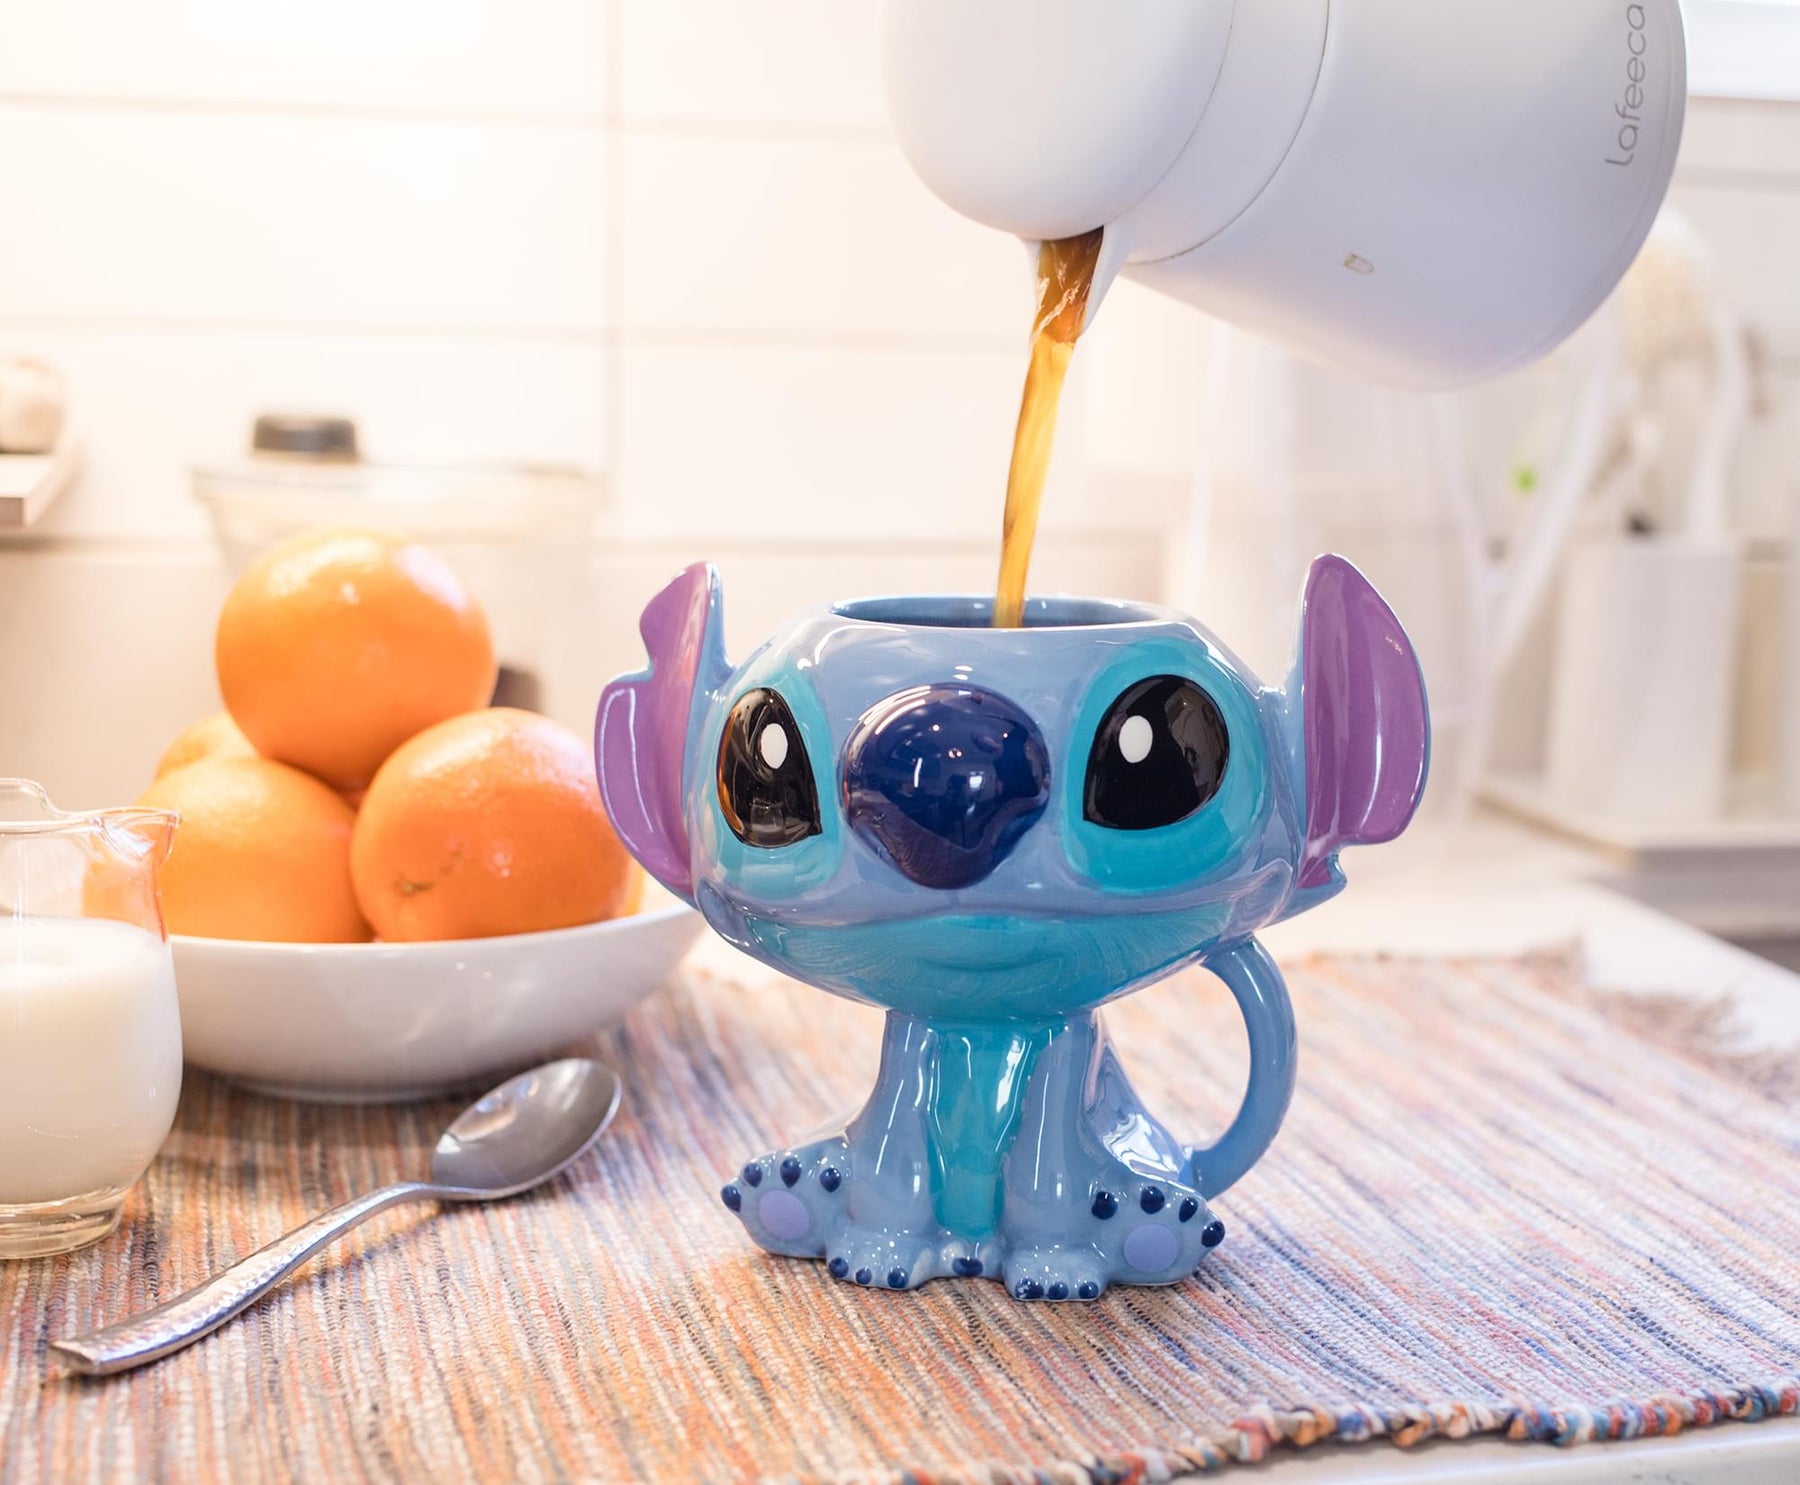 Lilo & Stitch 3D Ceramic Sculpted Mug